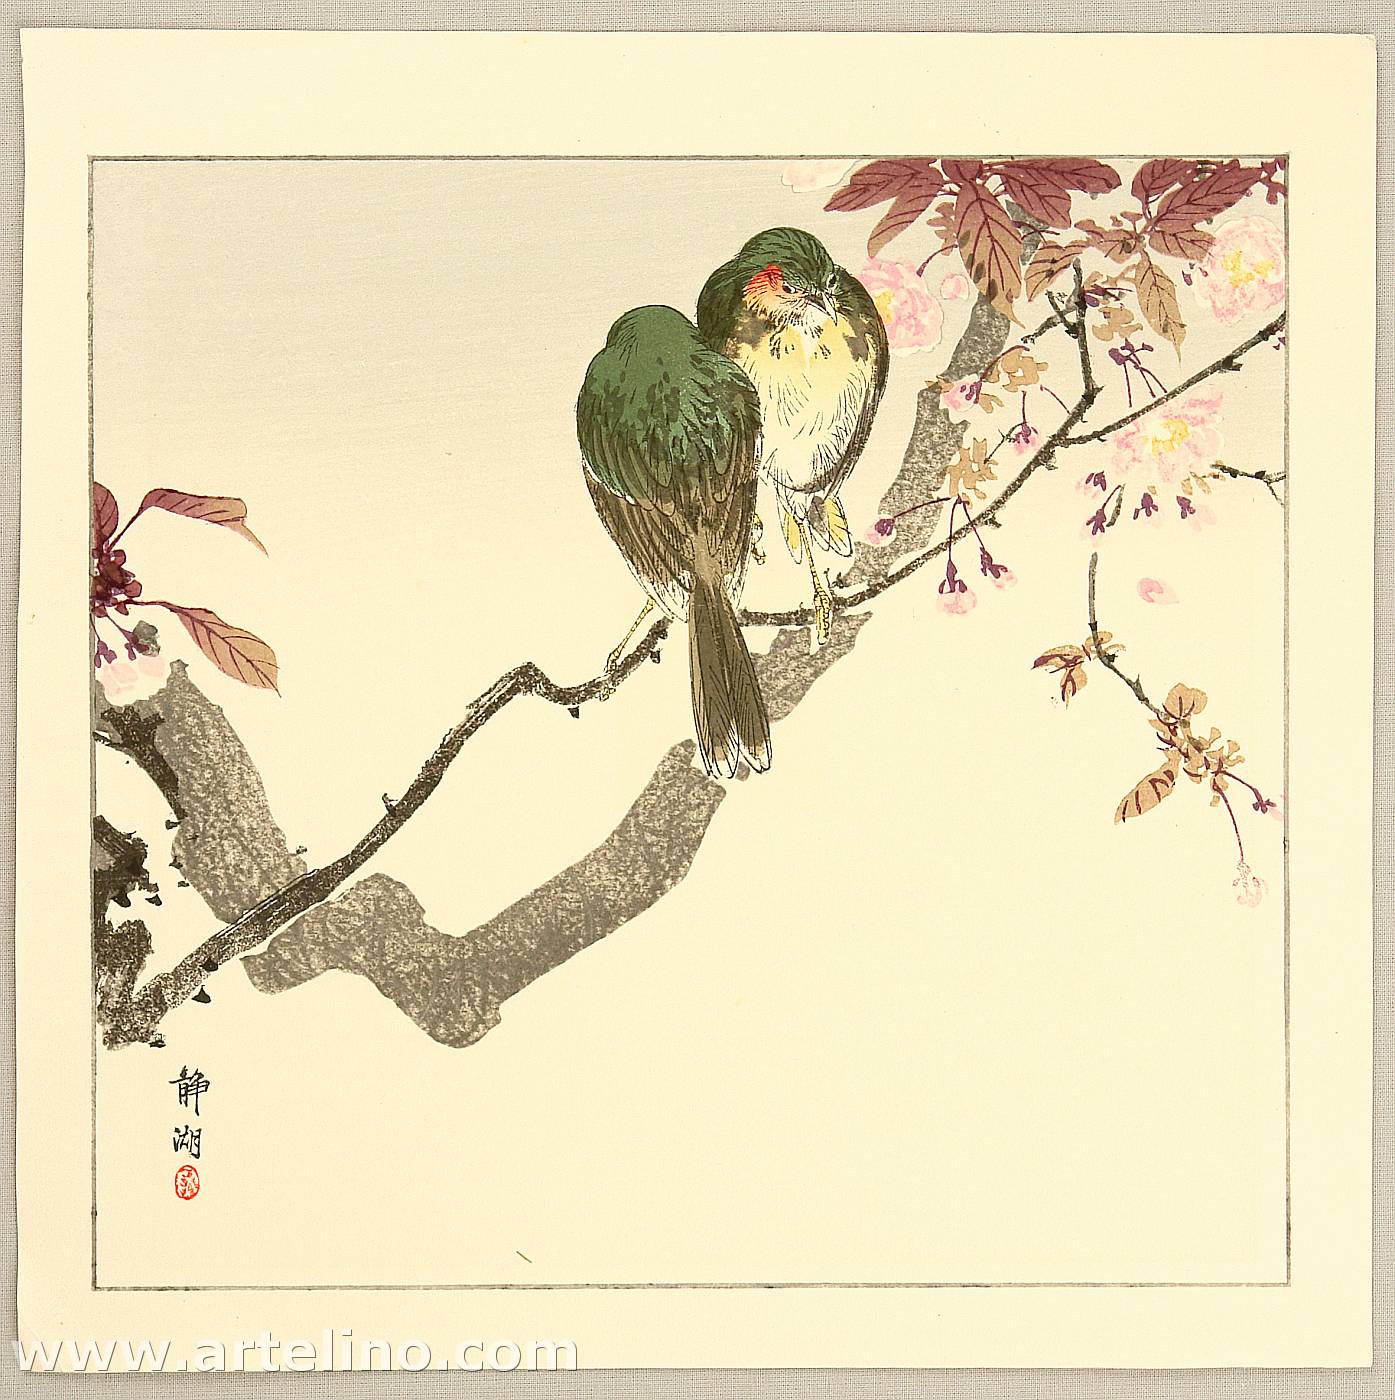 Seiko: Green Bird on a Branch - Artelino - Ukiyo-e Search